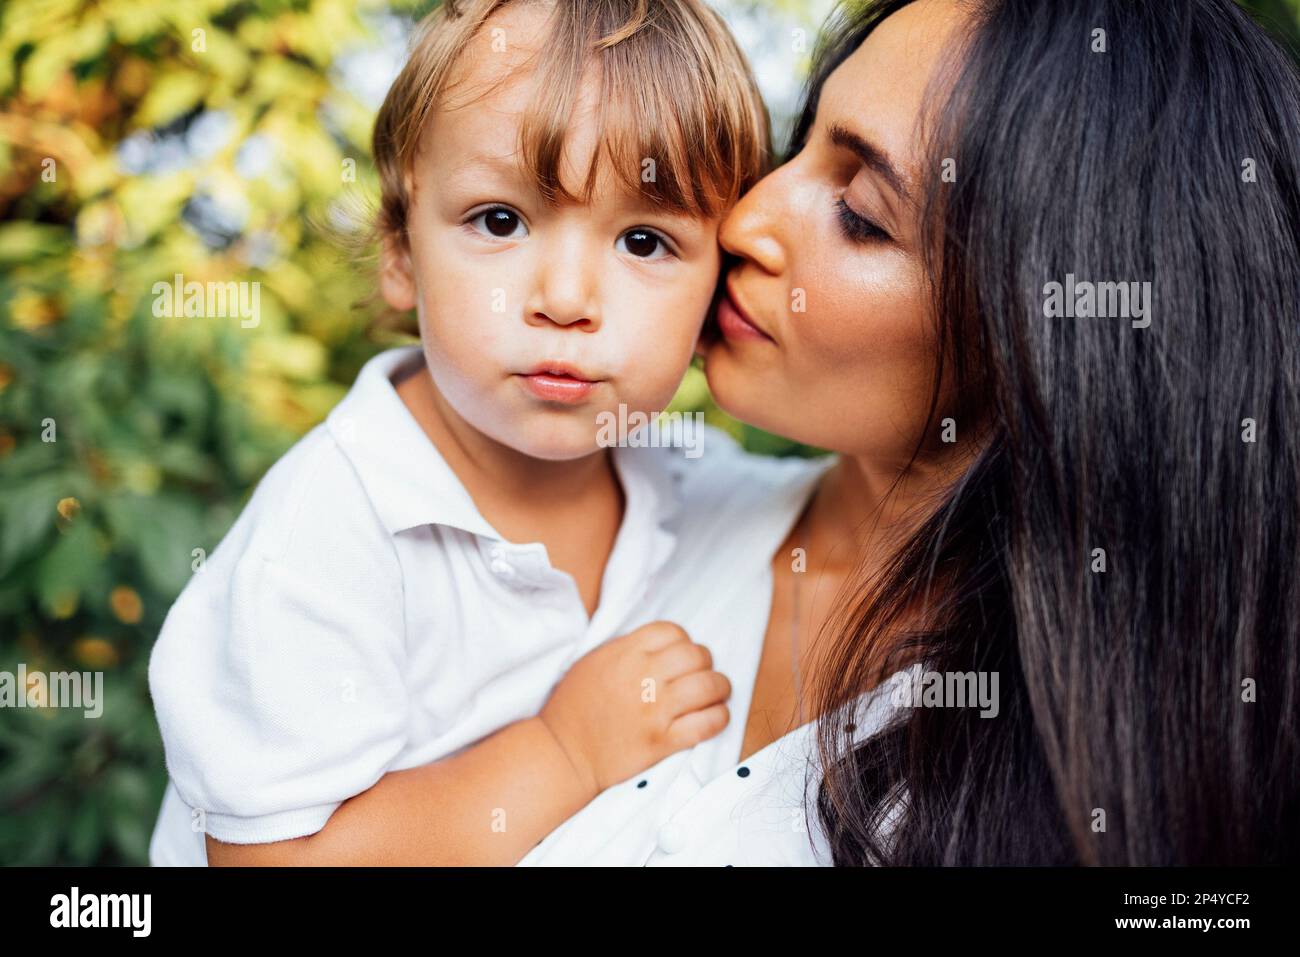 Joli portrait d'une belle mère embrassant son petit fils. Gros plan d'une jeune brune visage de femme touchant à son enfant mignon. Feuilles vertes dans le Banque D'Images